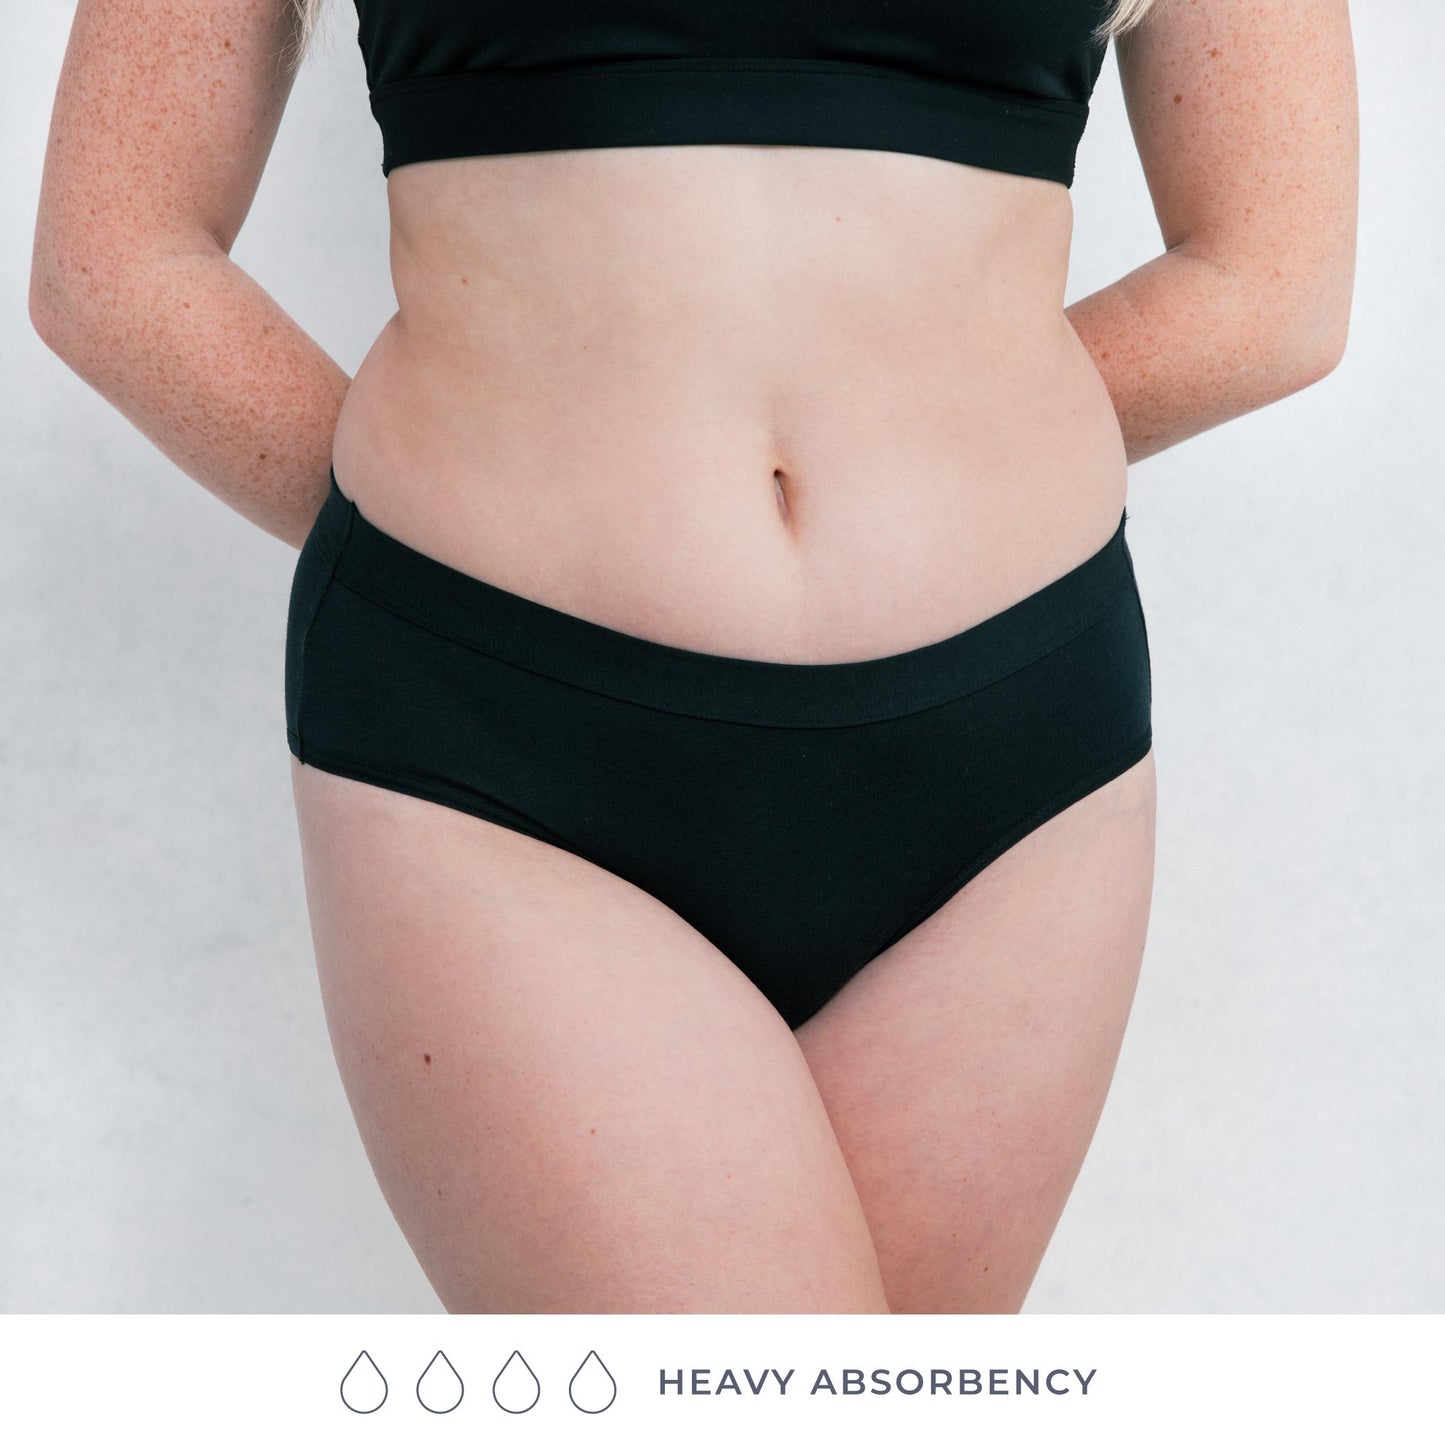 Moderate-Heavy Absorbency, Period & Leak-Proof Underwear